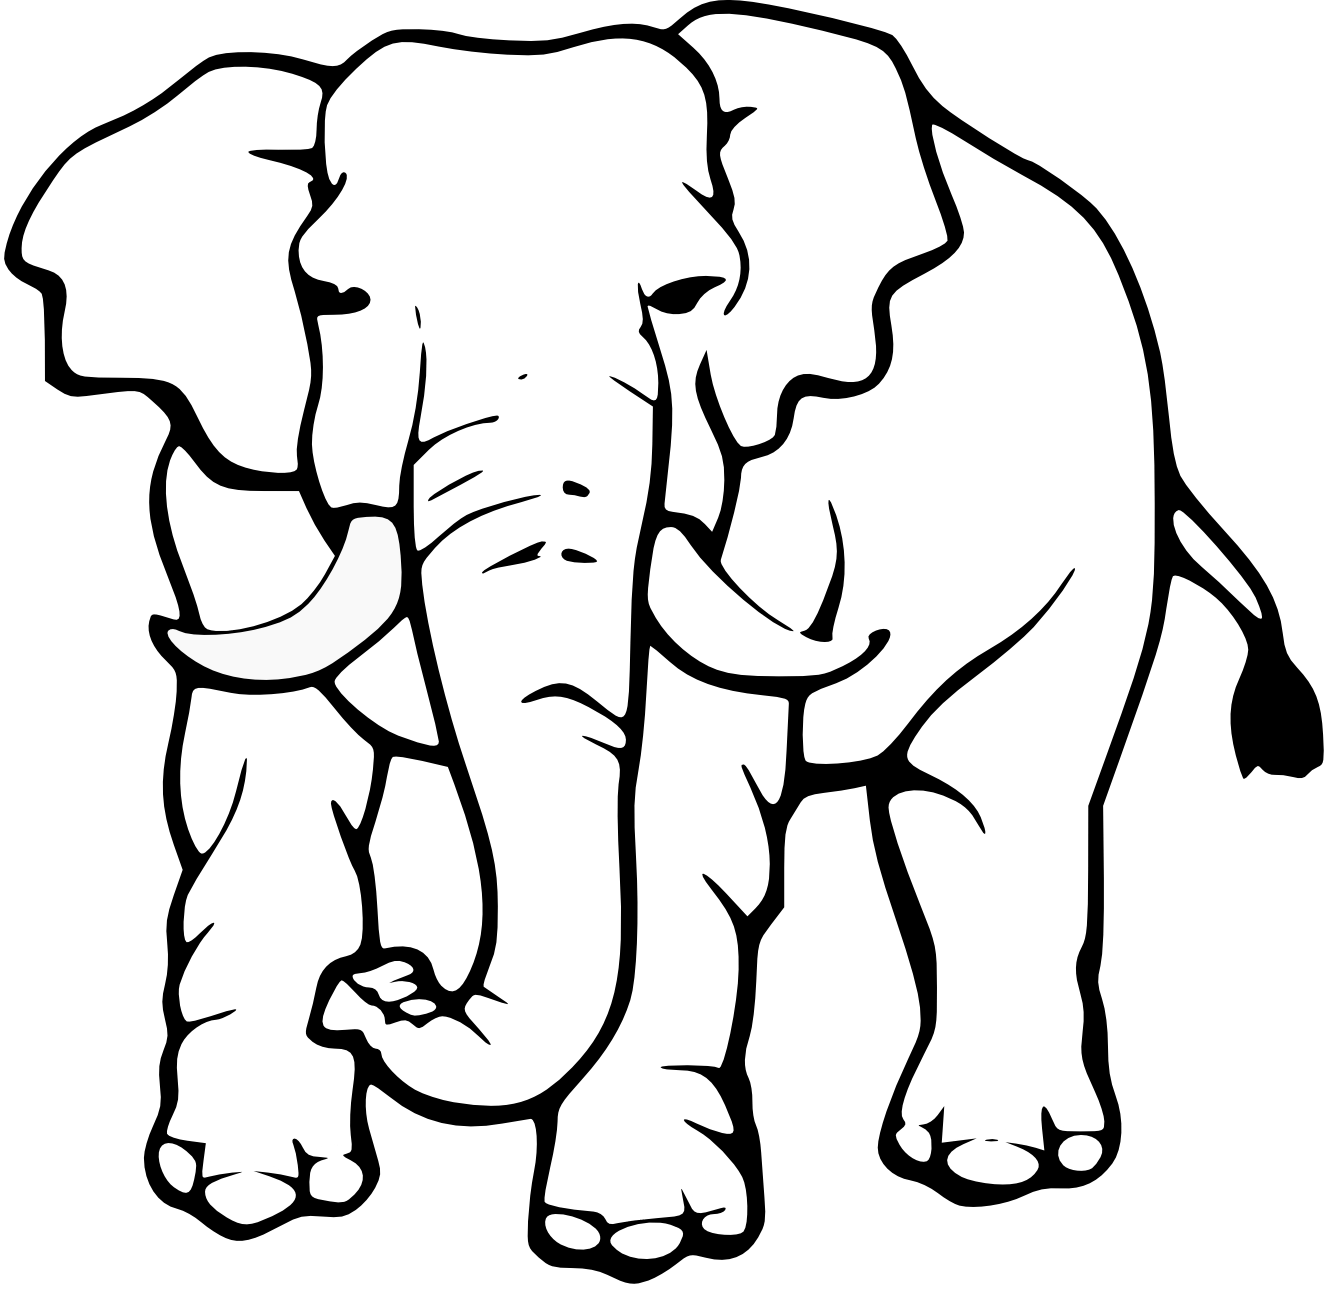 Elephant Black and White Logo - Free Elephant Images Black And White, Download Free Clip Art, Free ...